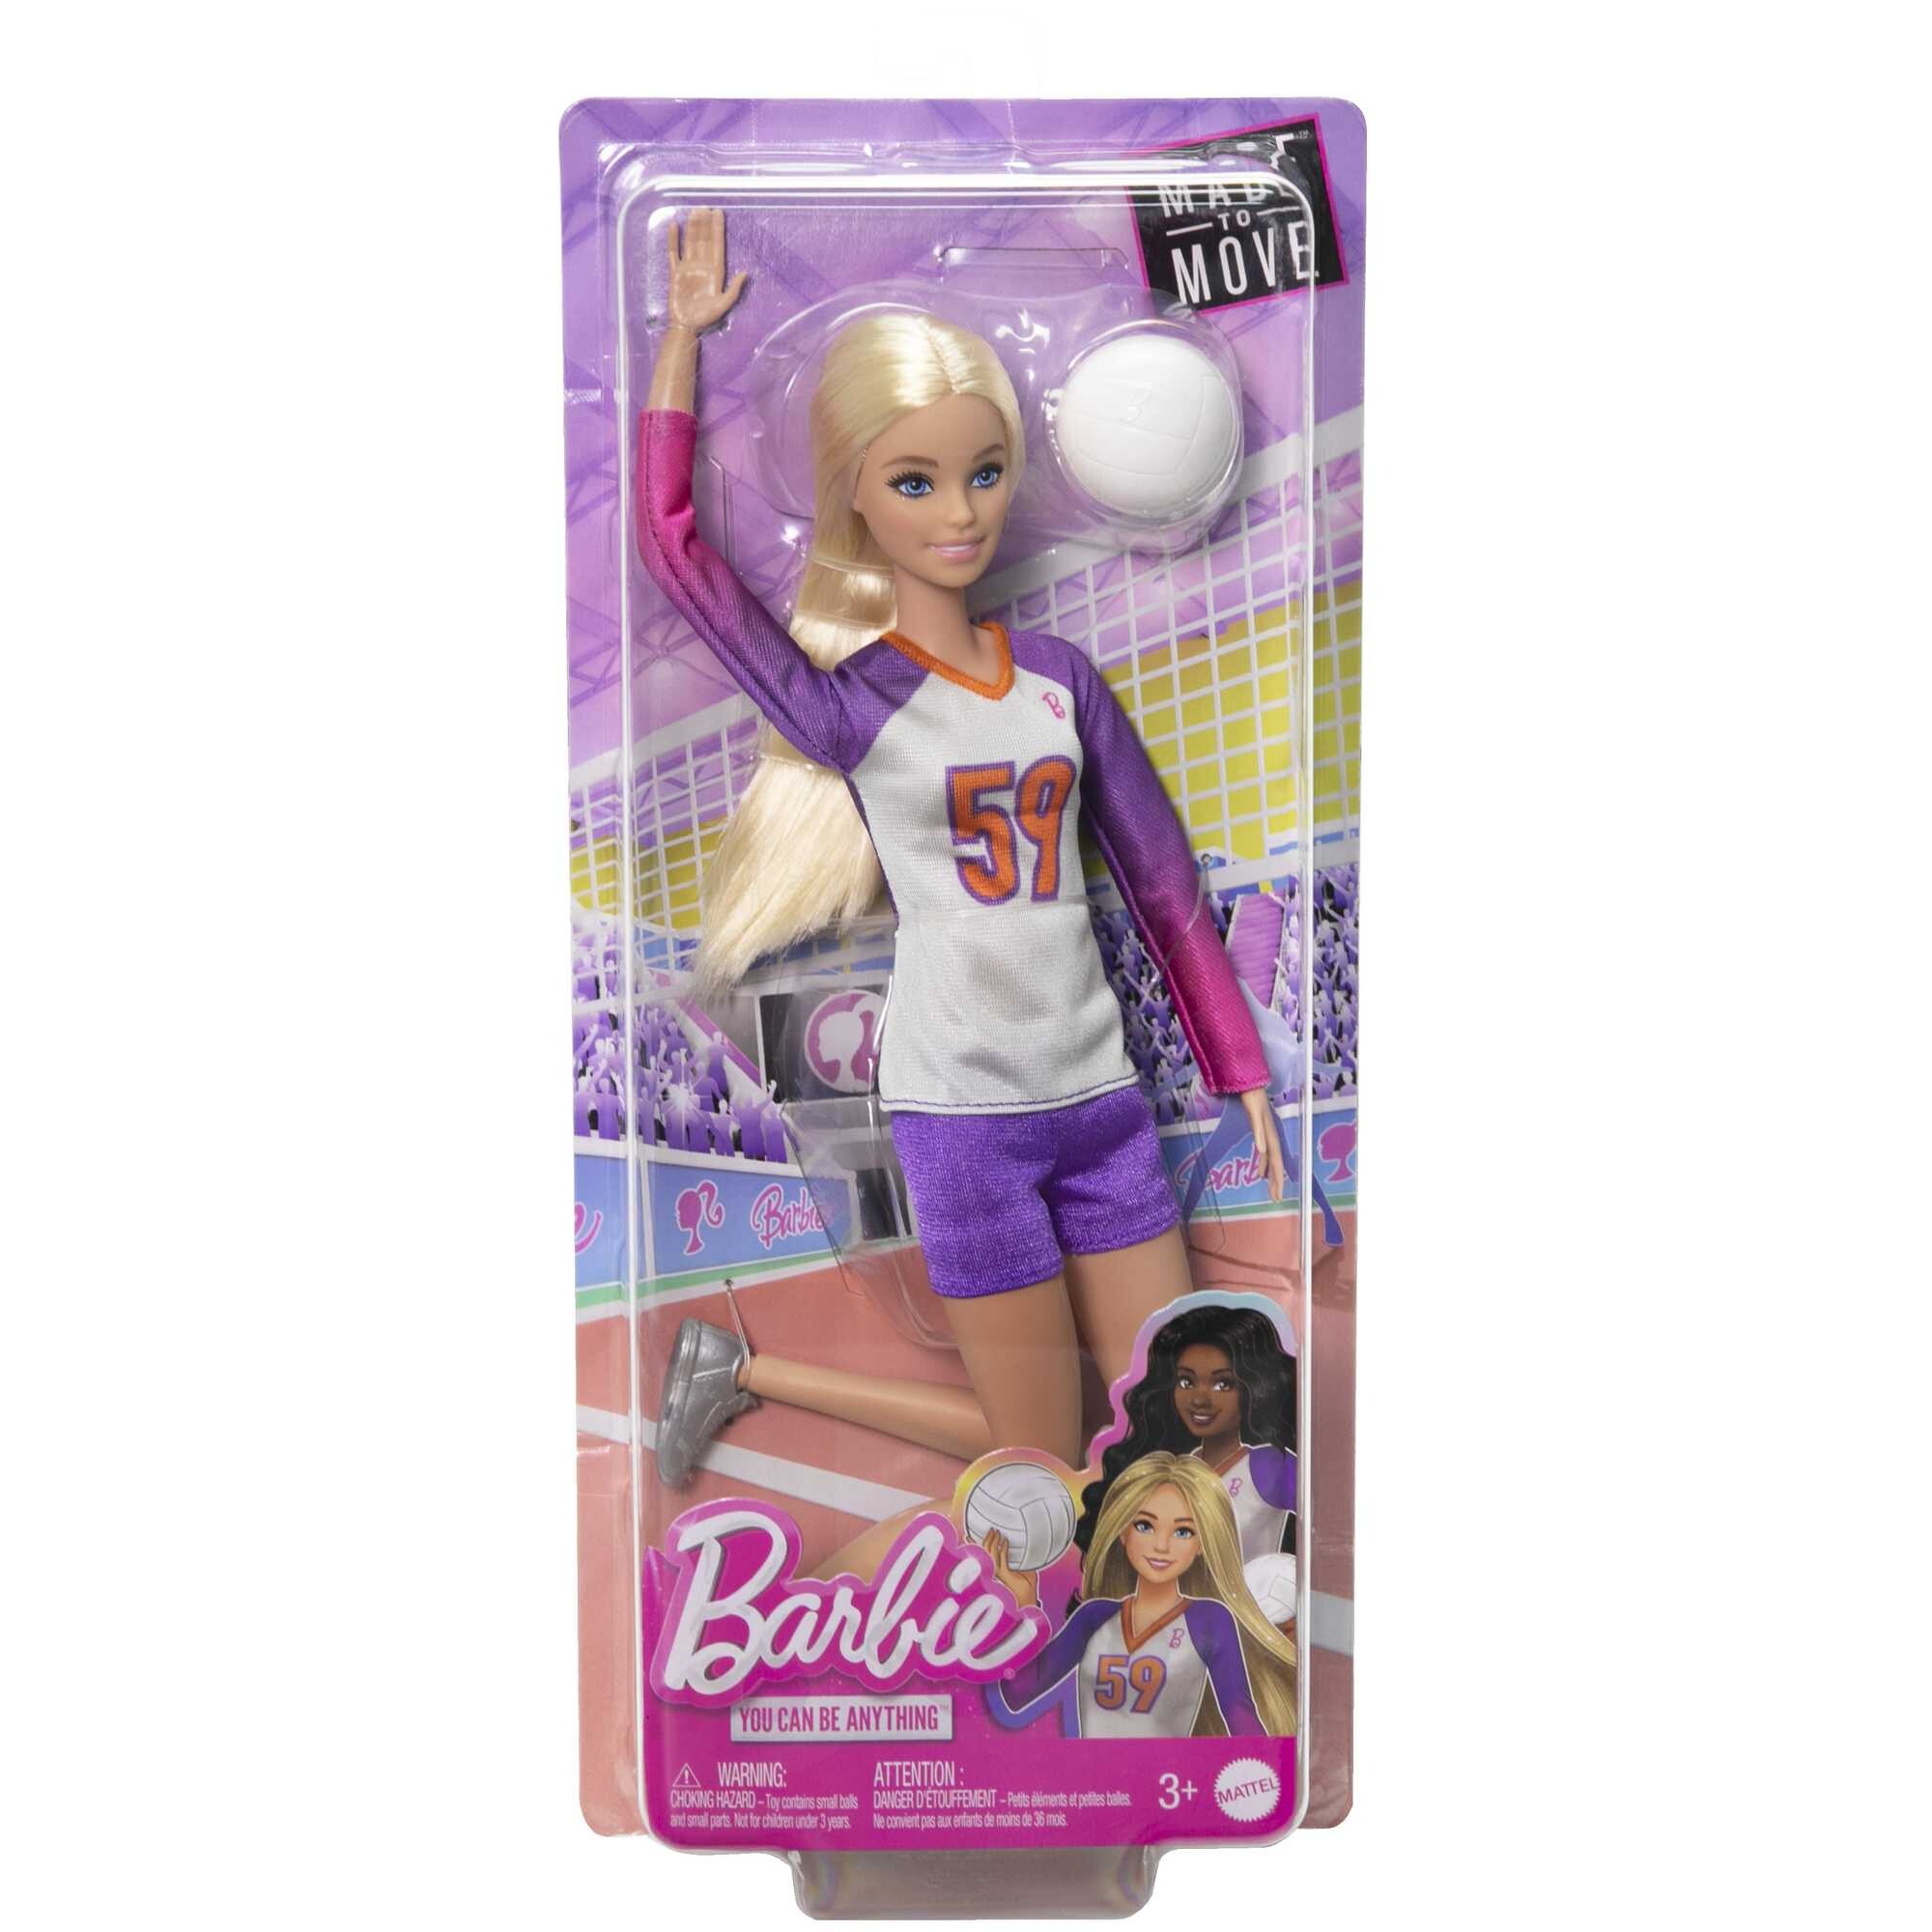 Barbie carriere - barbie pallavolista, bambola snodata con divisa sportiva, palla e accessori inclusi - Barbie